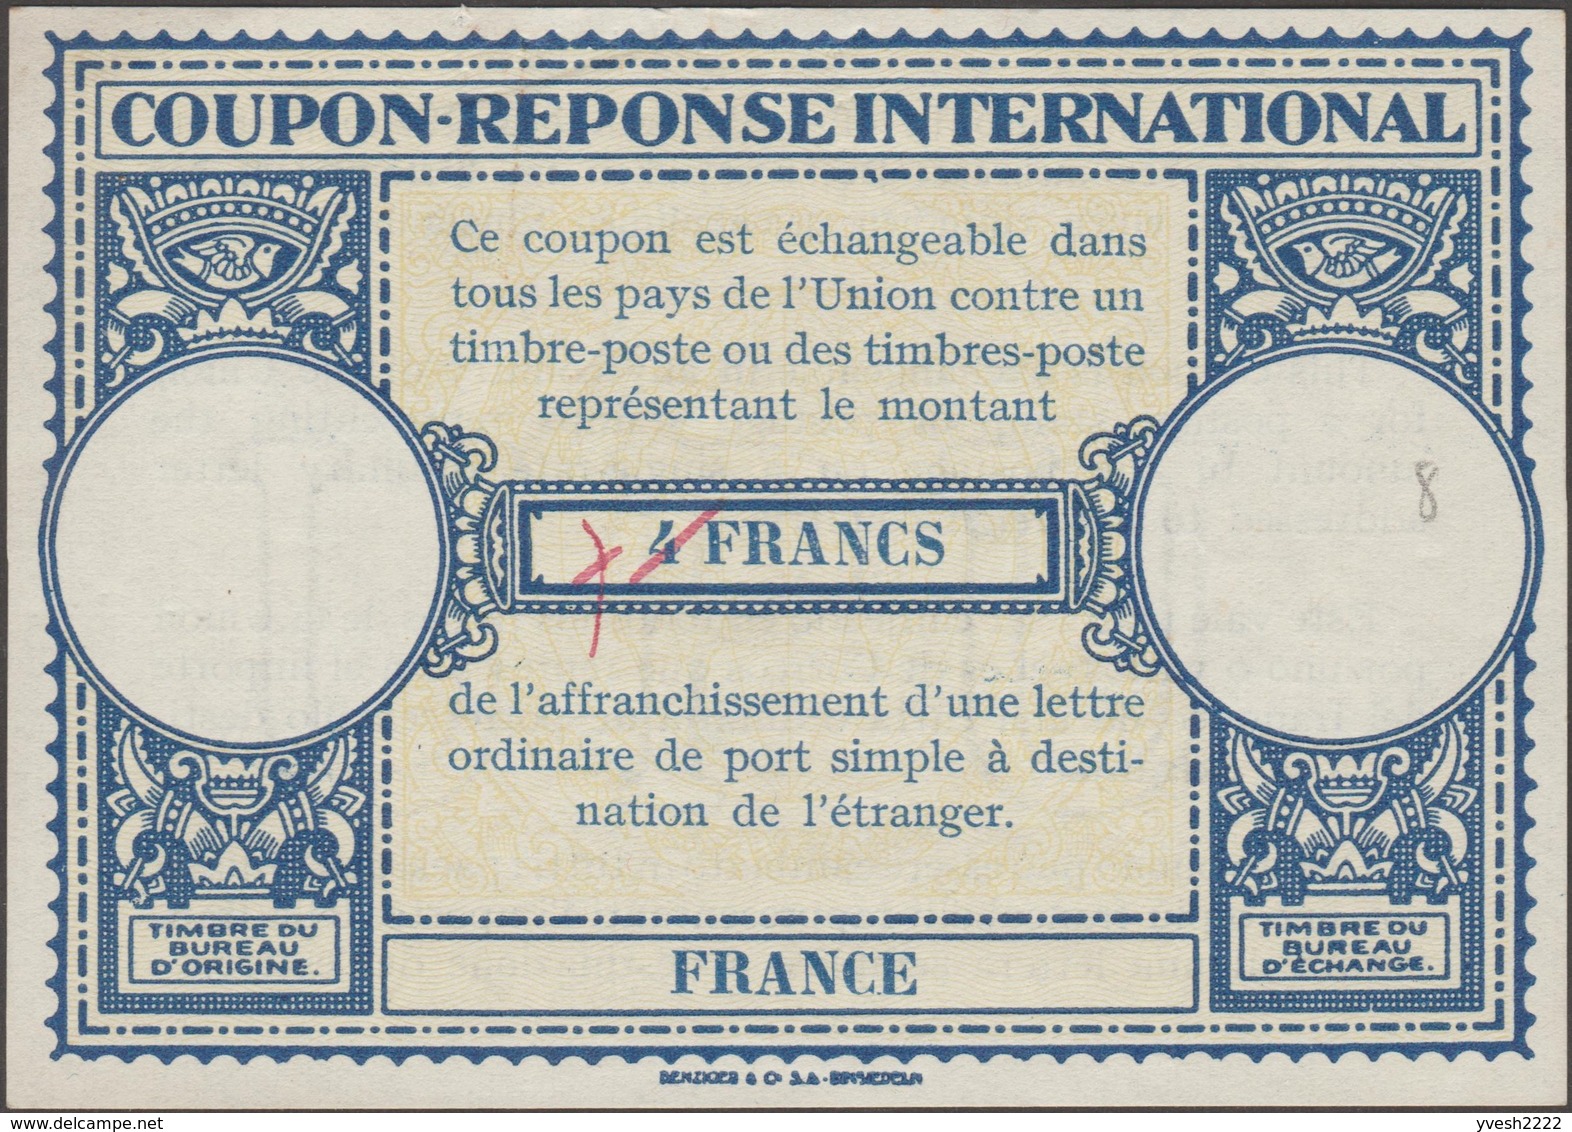 France, 3 coupons réponse international et franco-colonial. Rares, voir scans